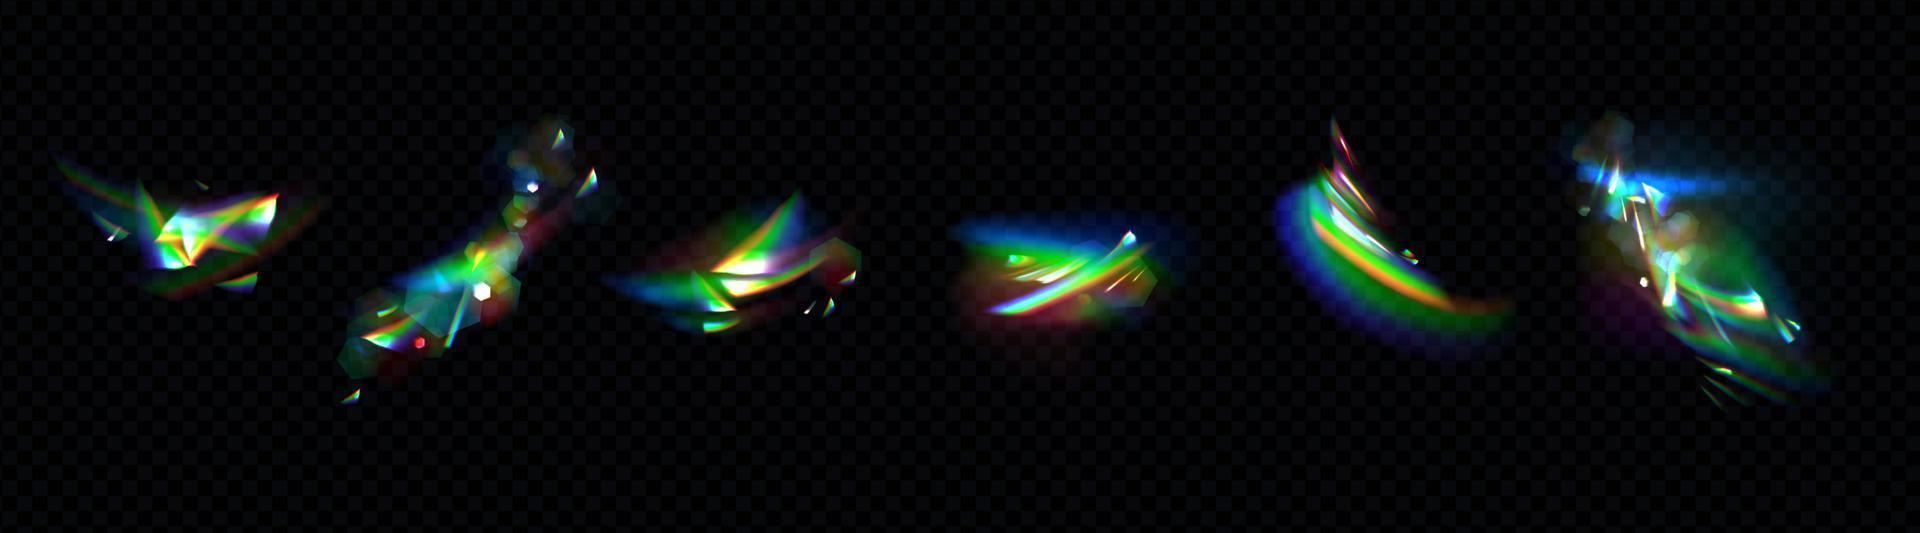 lumières arc-en-ciel de cristal, effets de réfraction des rayons vecteur